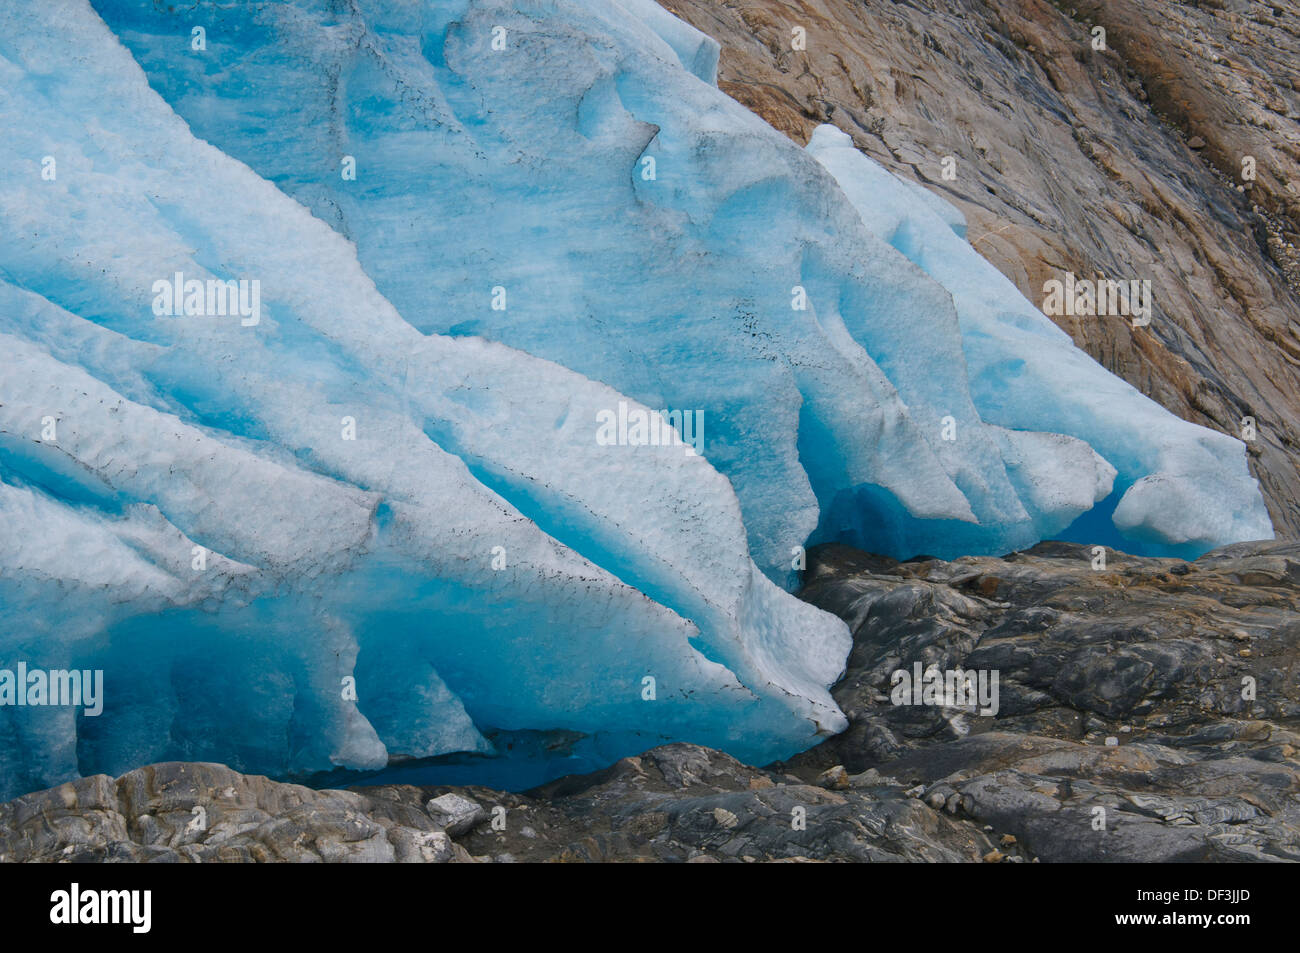 Norwegen/Svartisen National Park - das Schmelzen des Gletschers ist einer der gefährlichen Auswirkungen der Klimaerwärmung. Engenbreen-Gletscher zieht sich schnell zurück. Stockfoto